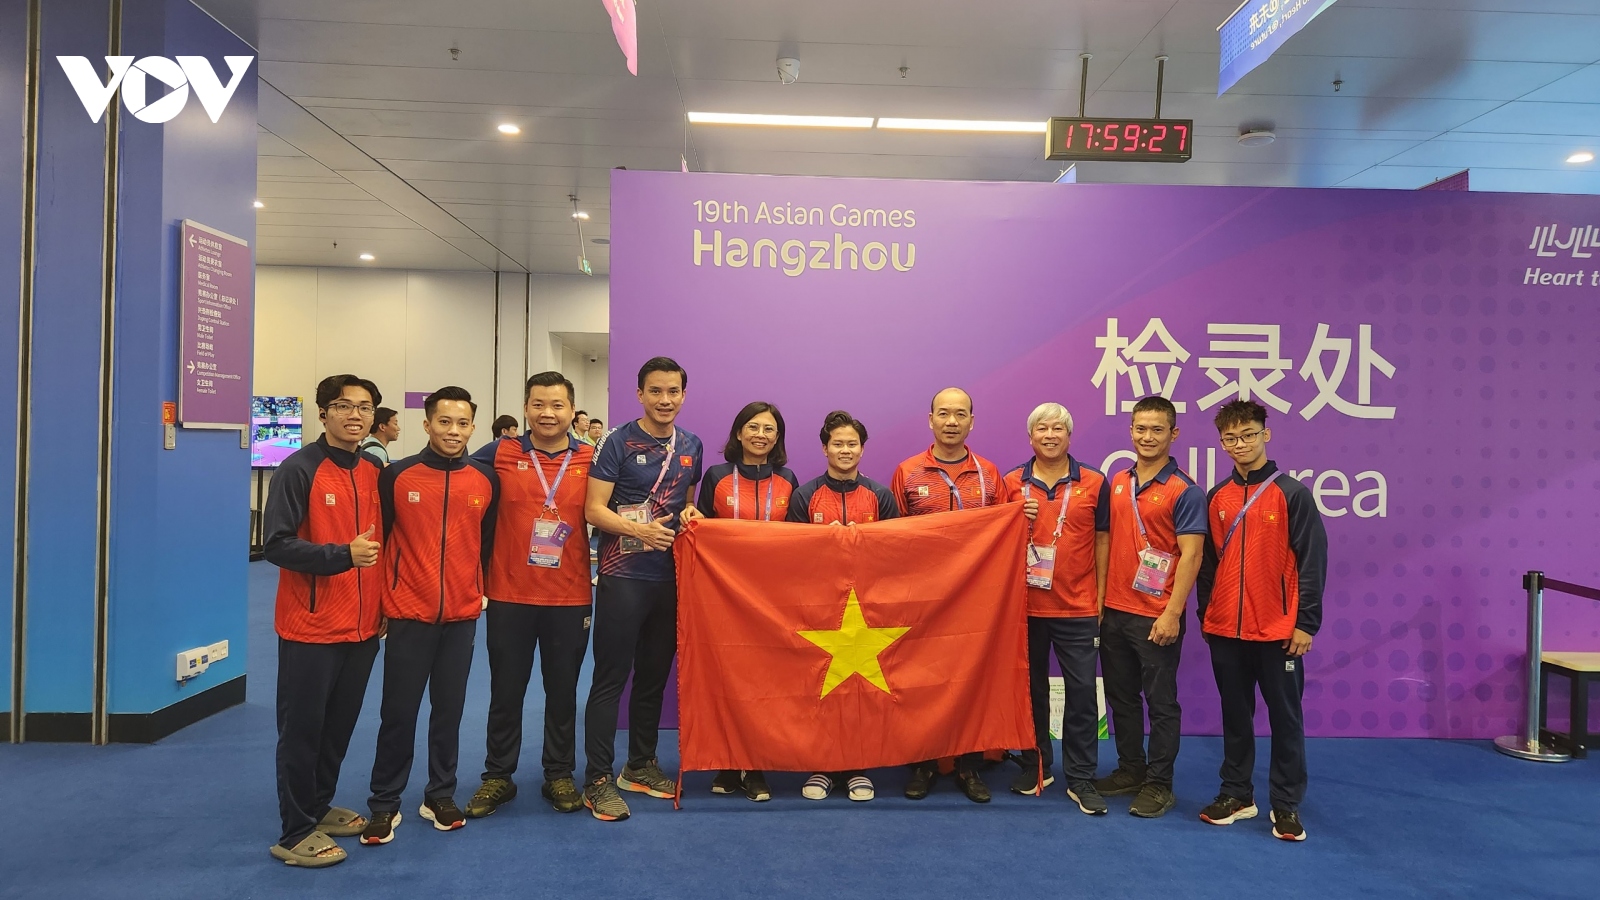 Thể dục dụng cụ mang về HCB thứ 2 cho Đoàn Thể thao Việt Nam ở ASIAD 19